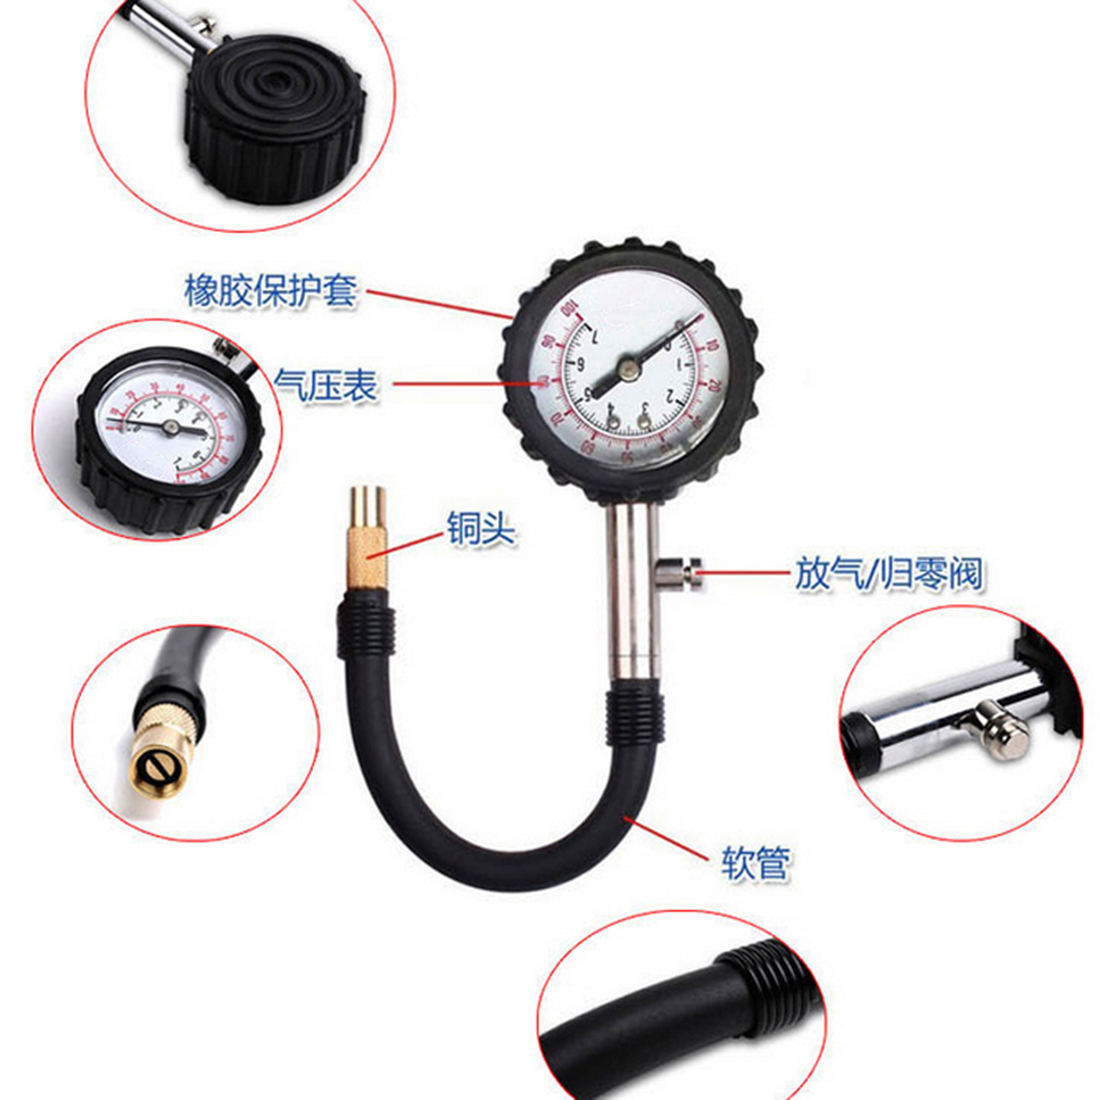 New Brand Long Tube Auto Car Bike Motor Tyre Air Pressure Gauge Meter Tire Pressure Gauge Meter Vehicle Tester Monitoring System